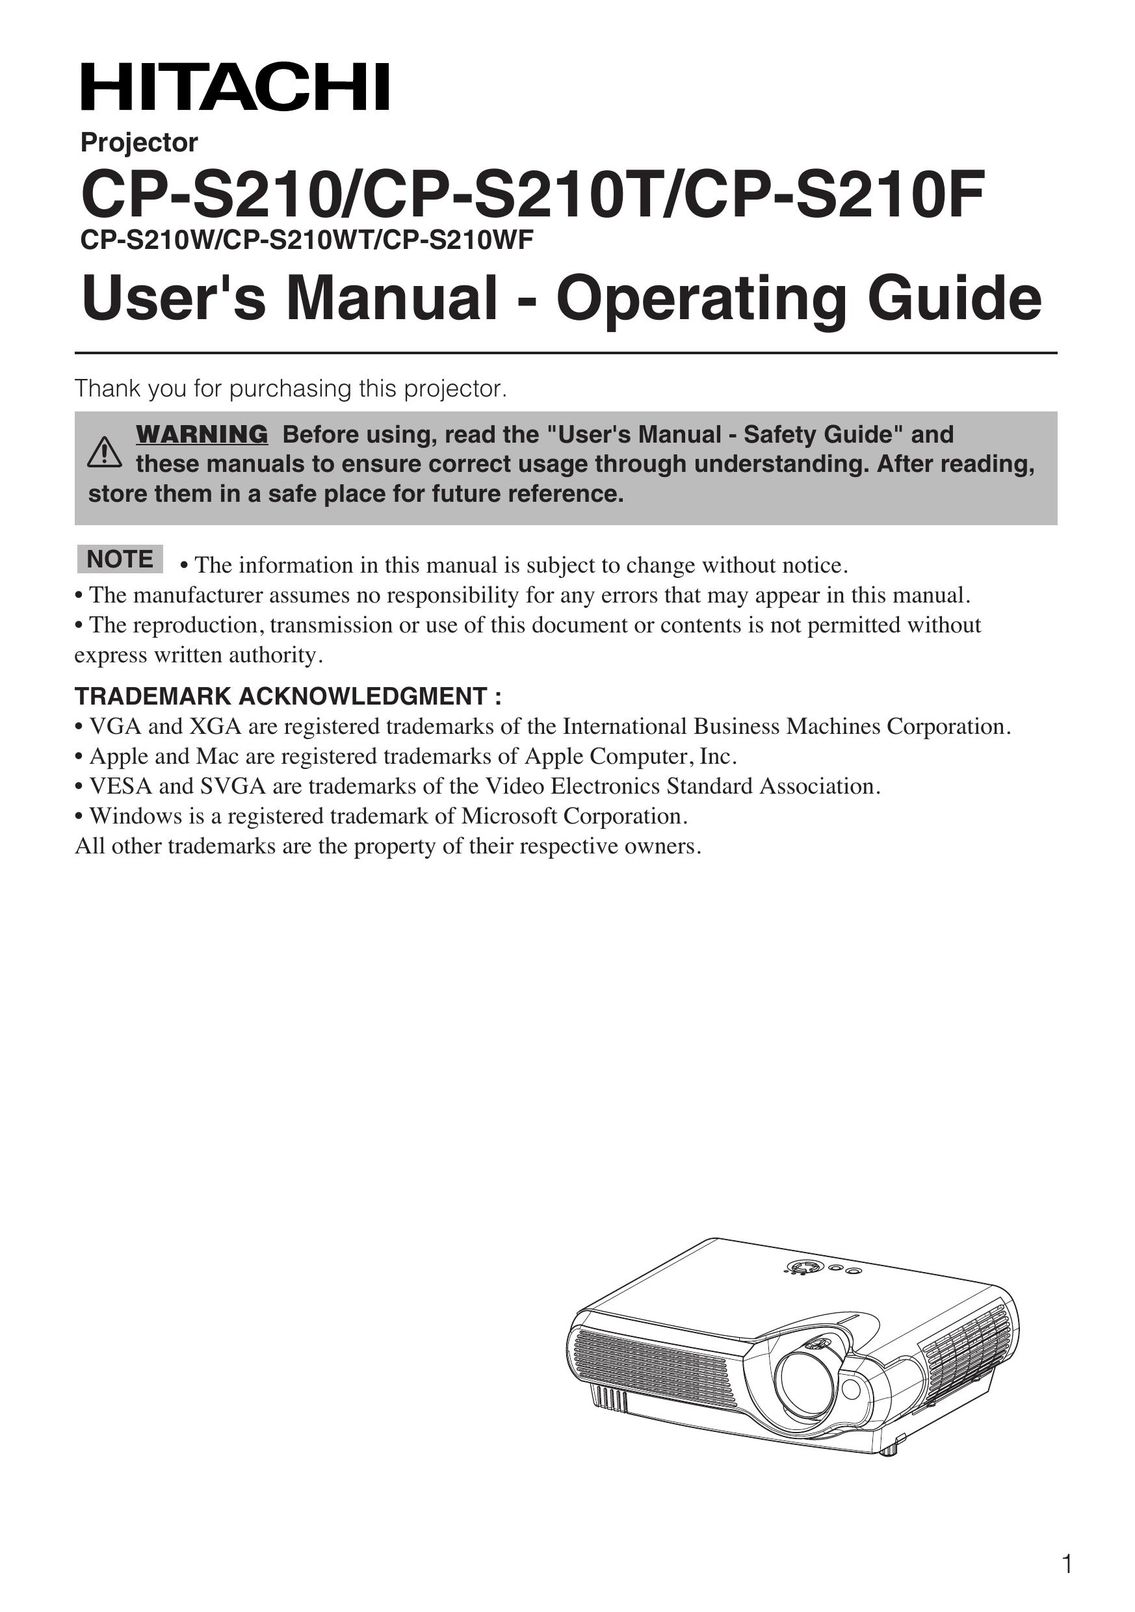 Hitachi CP-S210F Projector User Manual